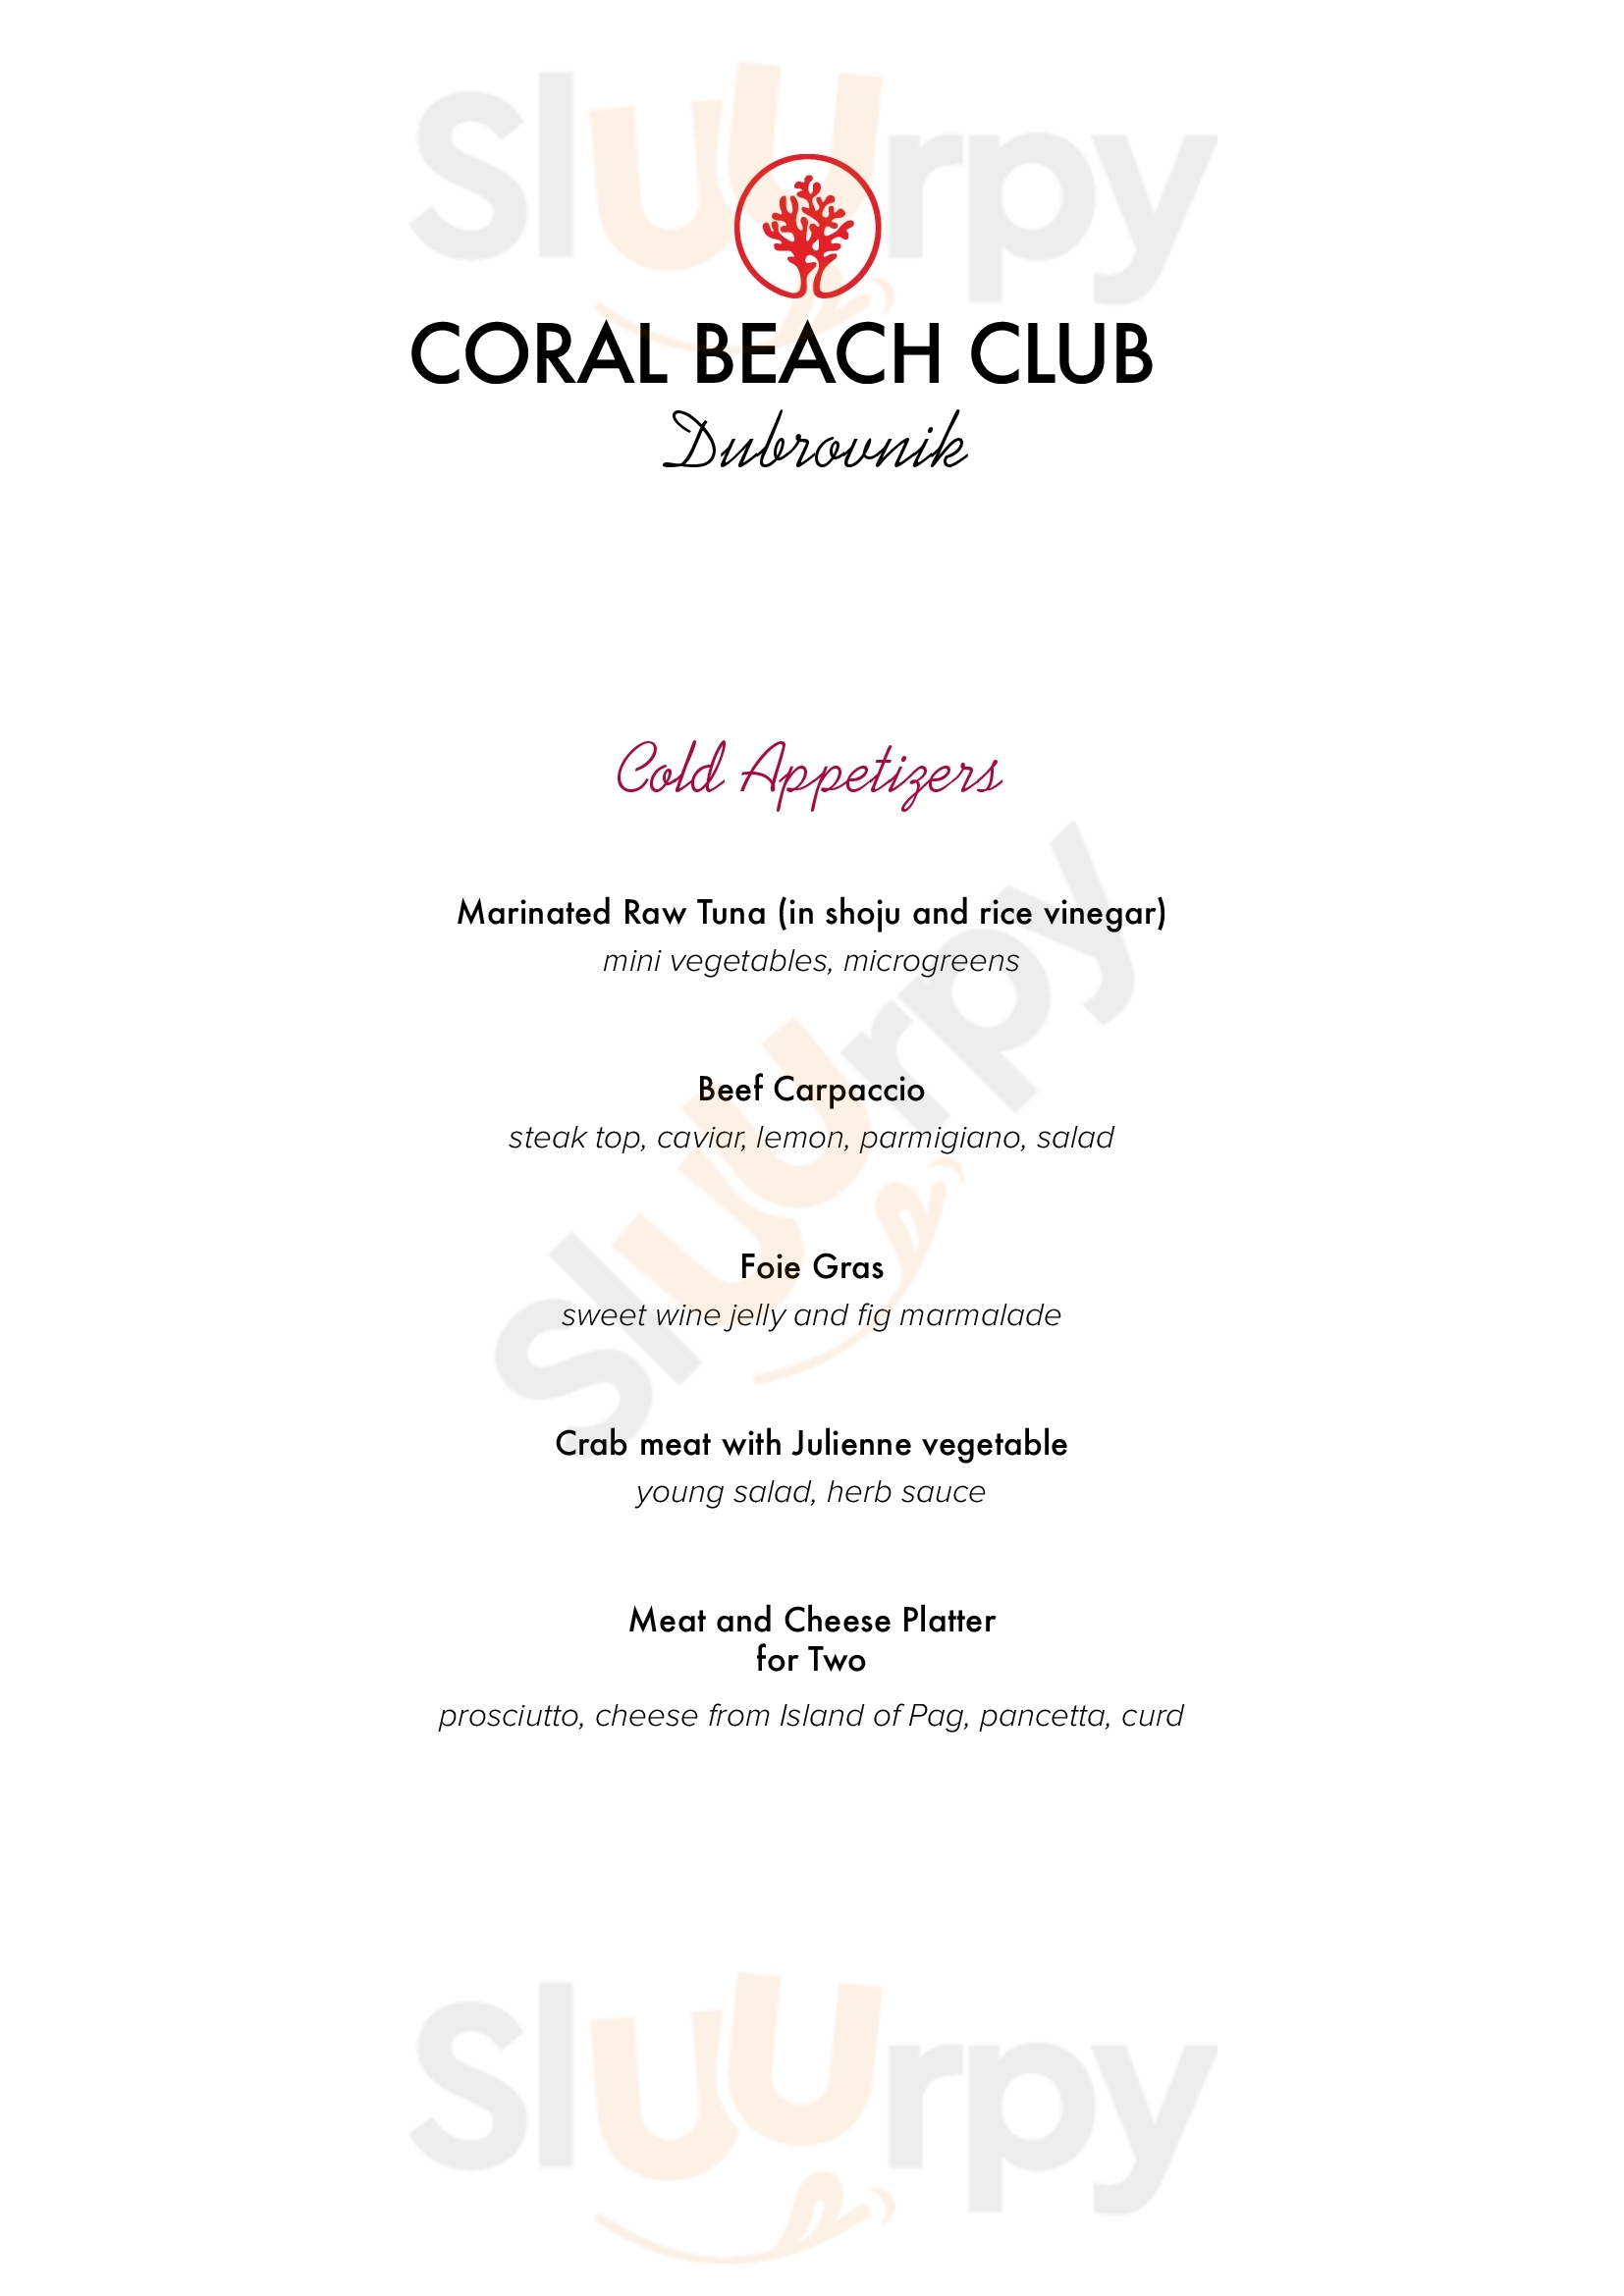 Coral Beach Club Dubrovnik Menu - 1